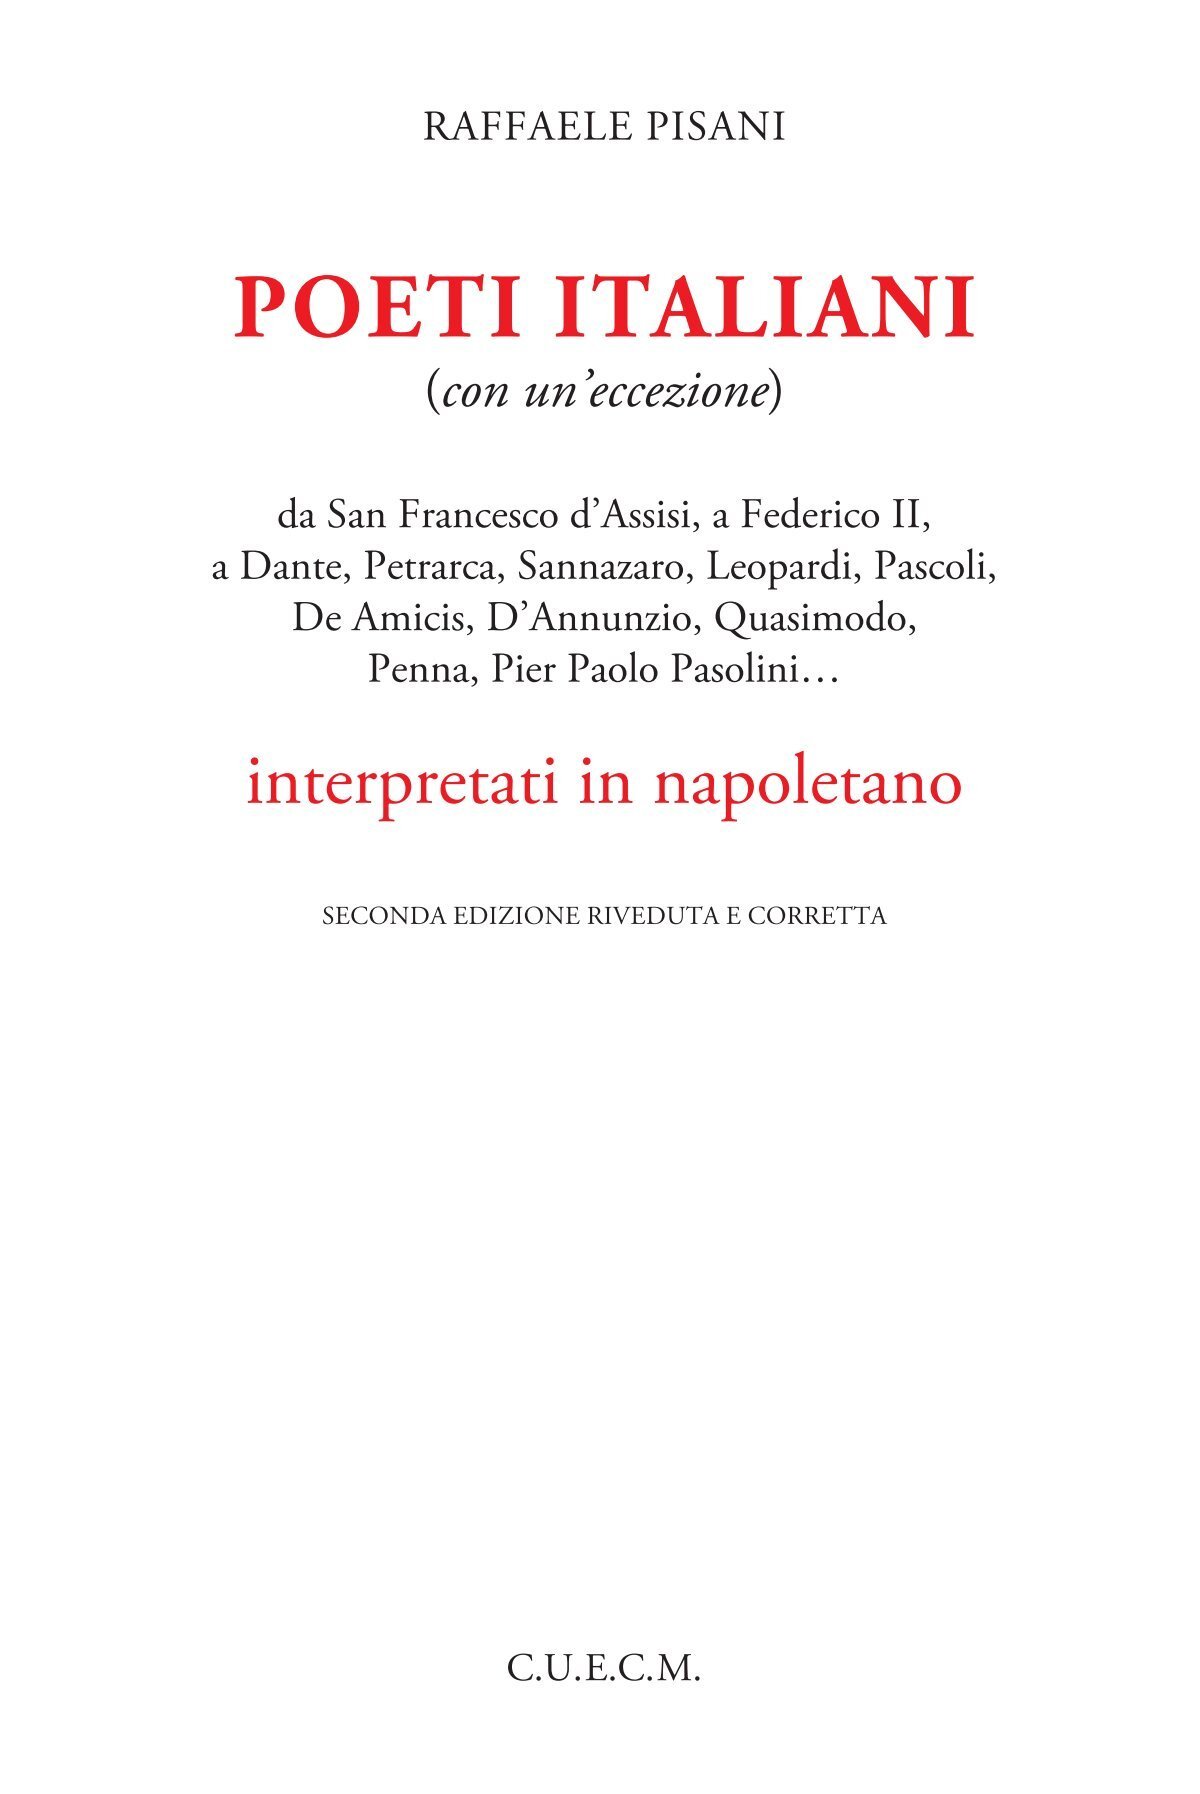 Dialetto Napoletano Poesie Di Natale In Napoletano.Poeti Italiani In Napoletano Raffaele Pisani Poeta